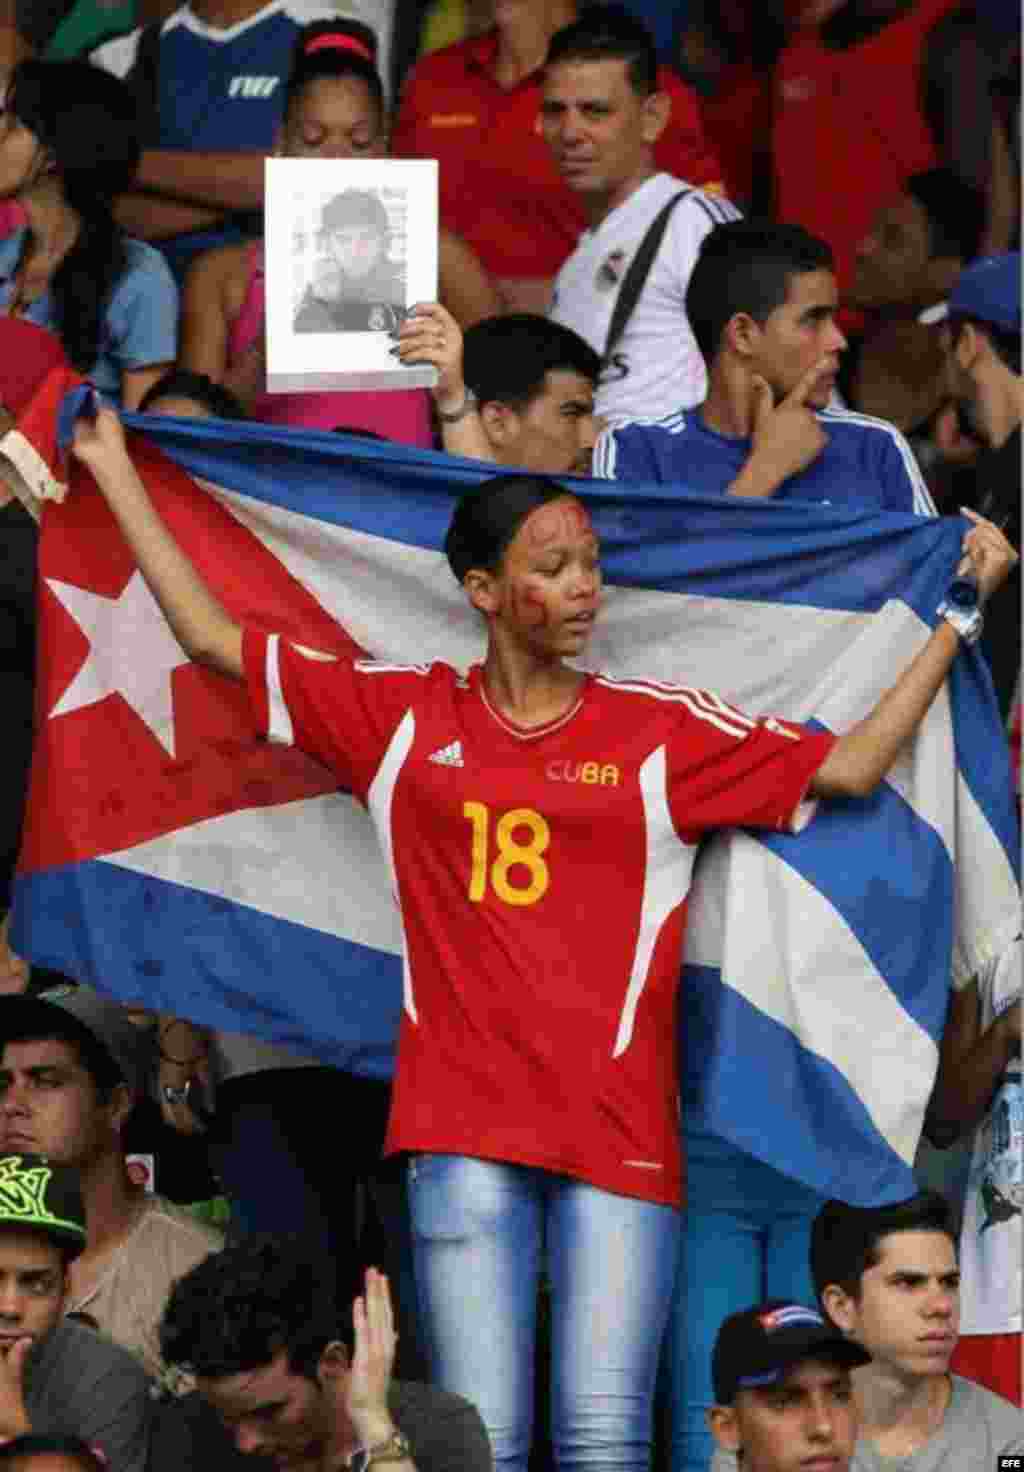 Otra cubana prefiere respaldar a su equipo.